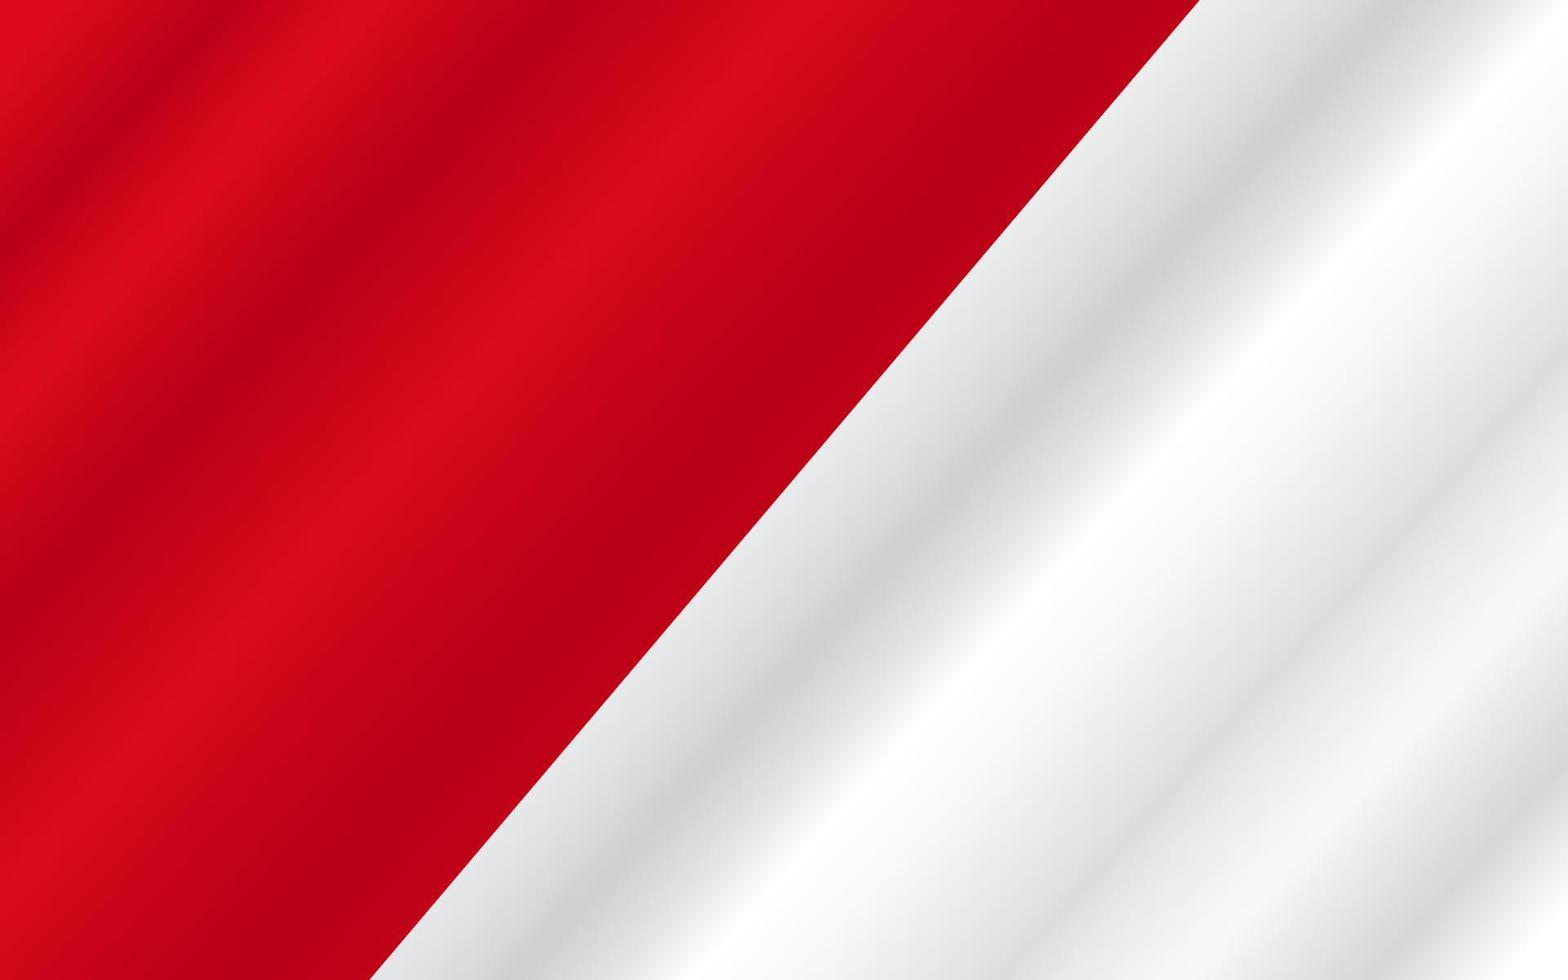 fond de drapeau indonésie - indonésie joyeux jour de l'indépendance, bannière, illustration vectorielle. vacances indonésiennes 17 août élément de design avec drapeau vecteur